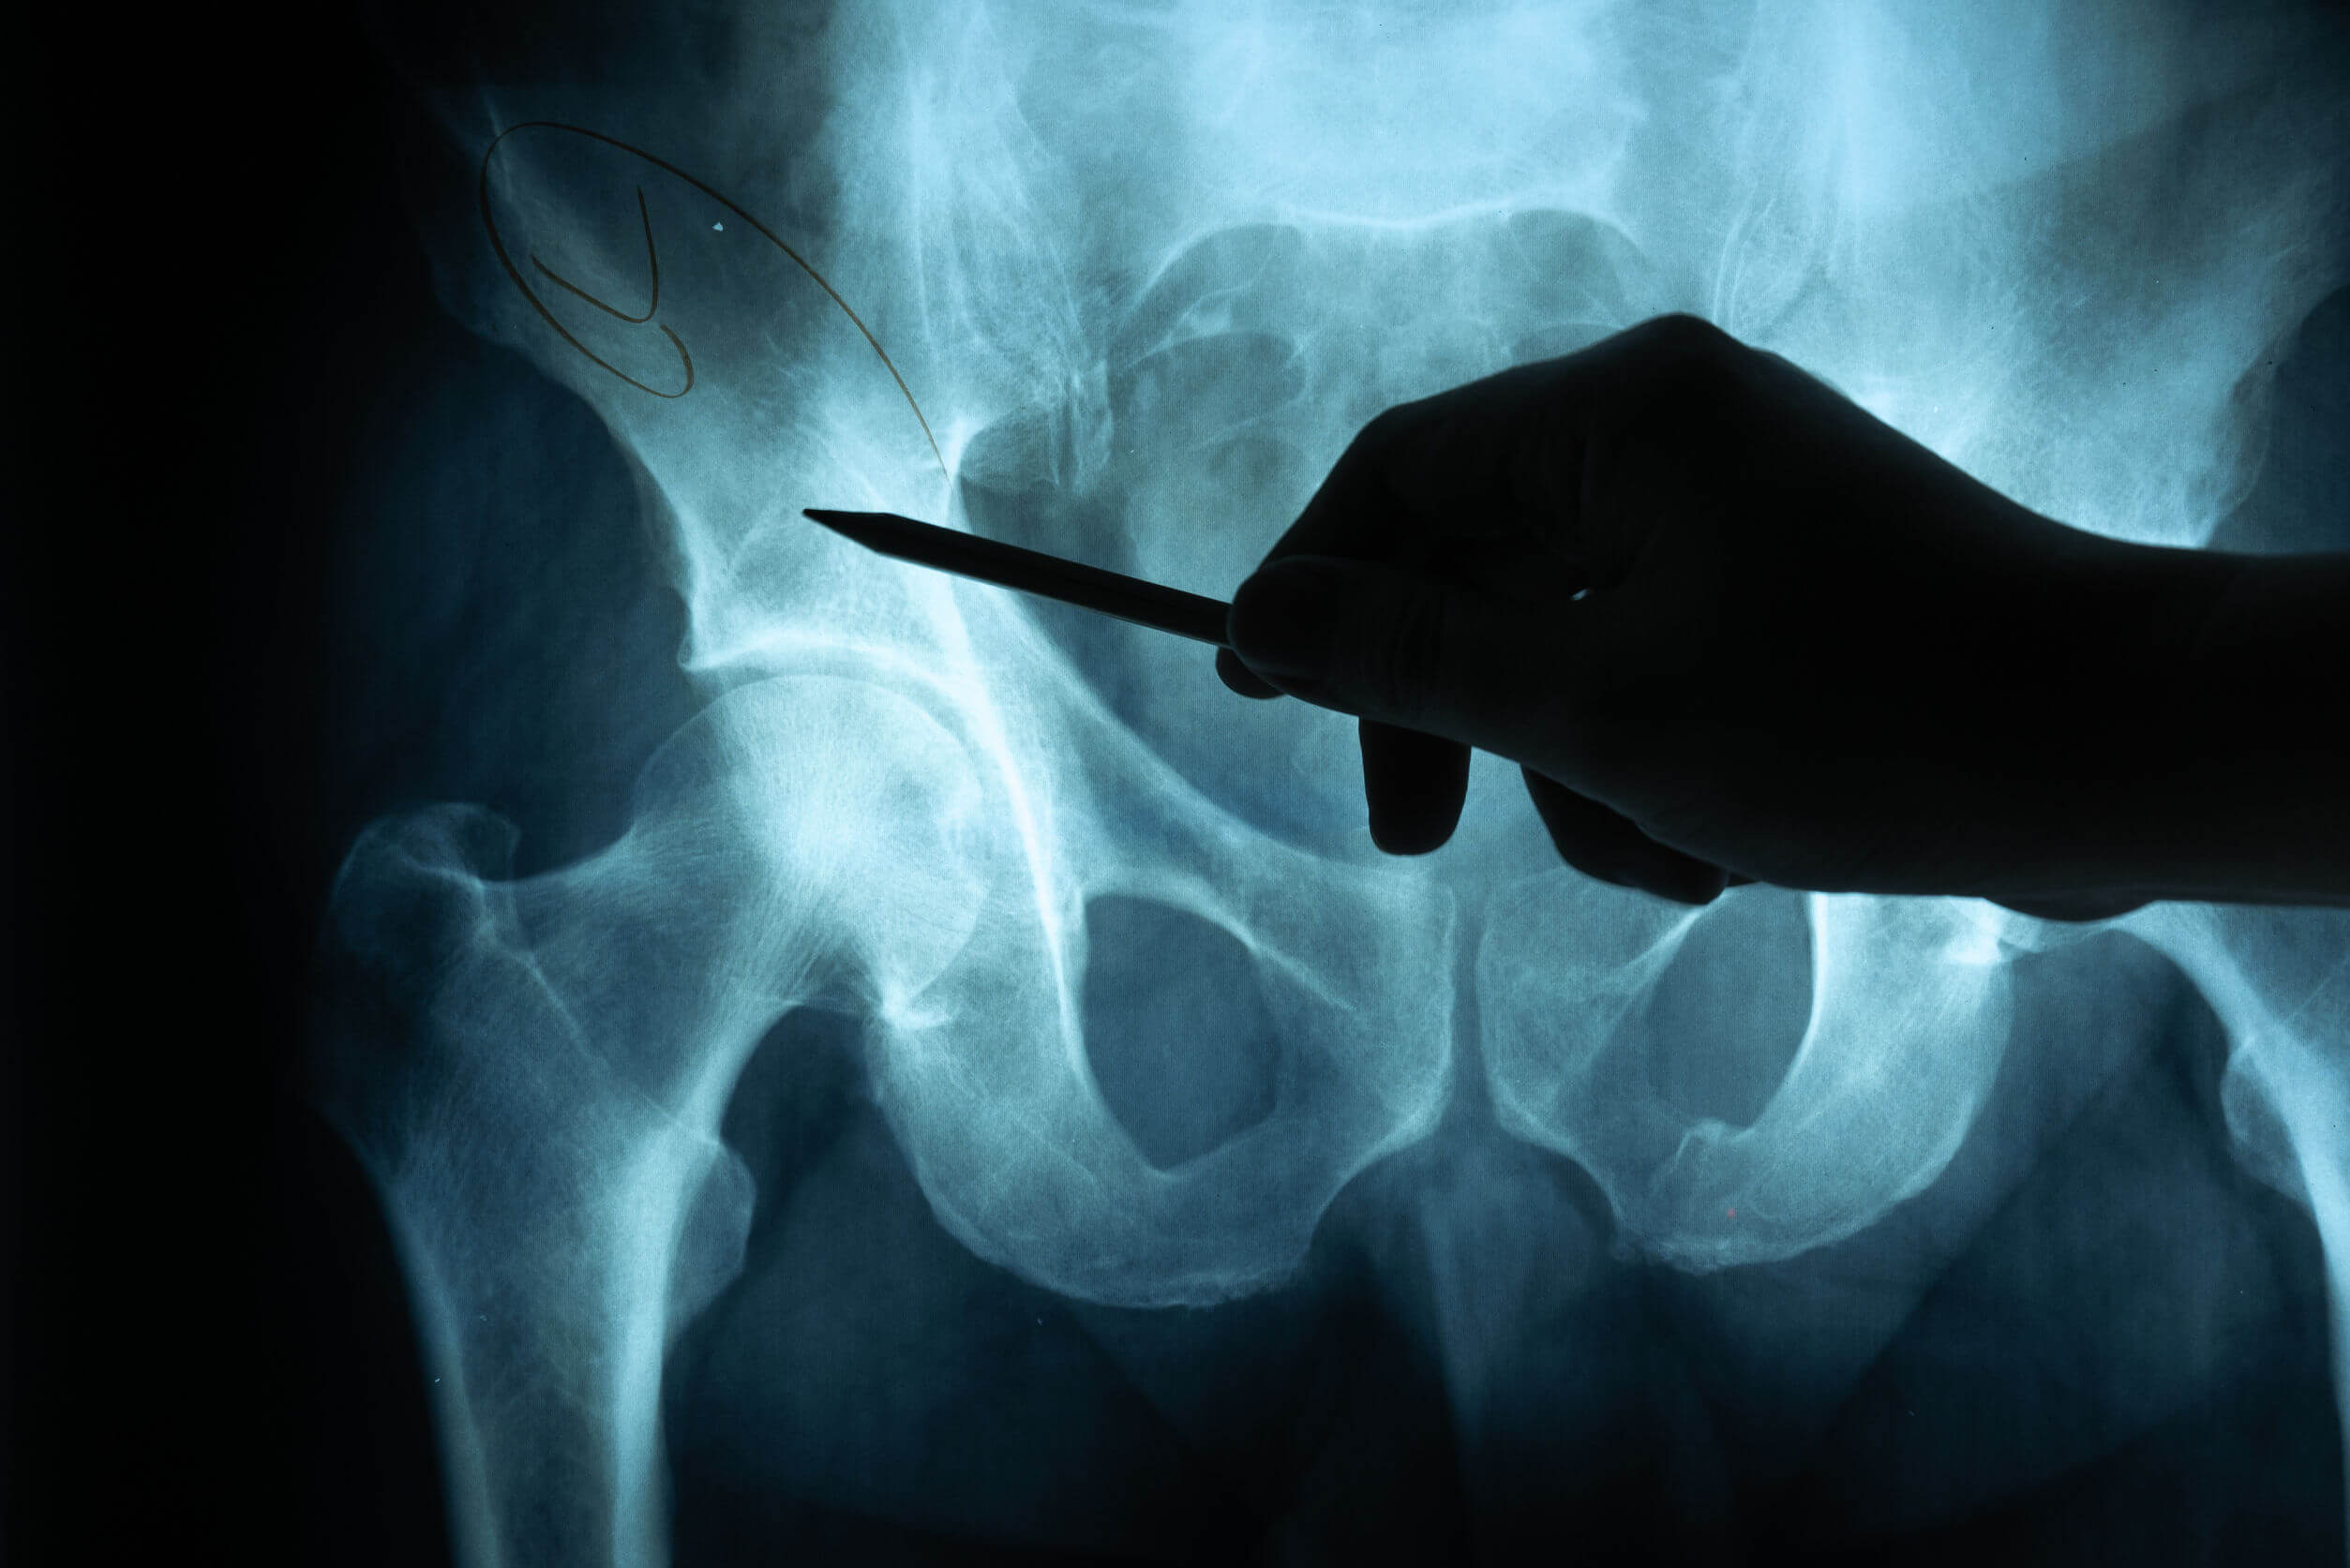 Les fractures de la hanche sont très fréquentes chez les personnes âgées.